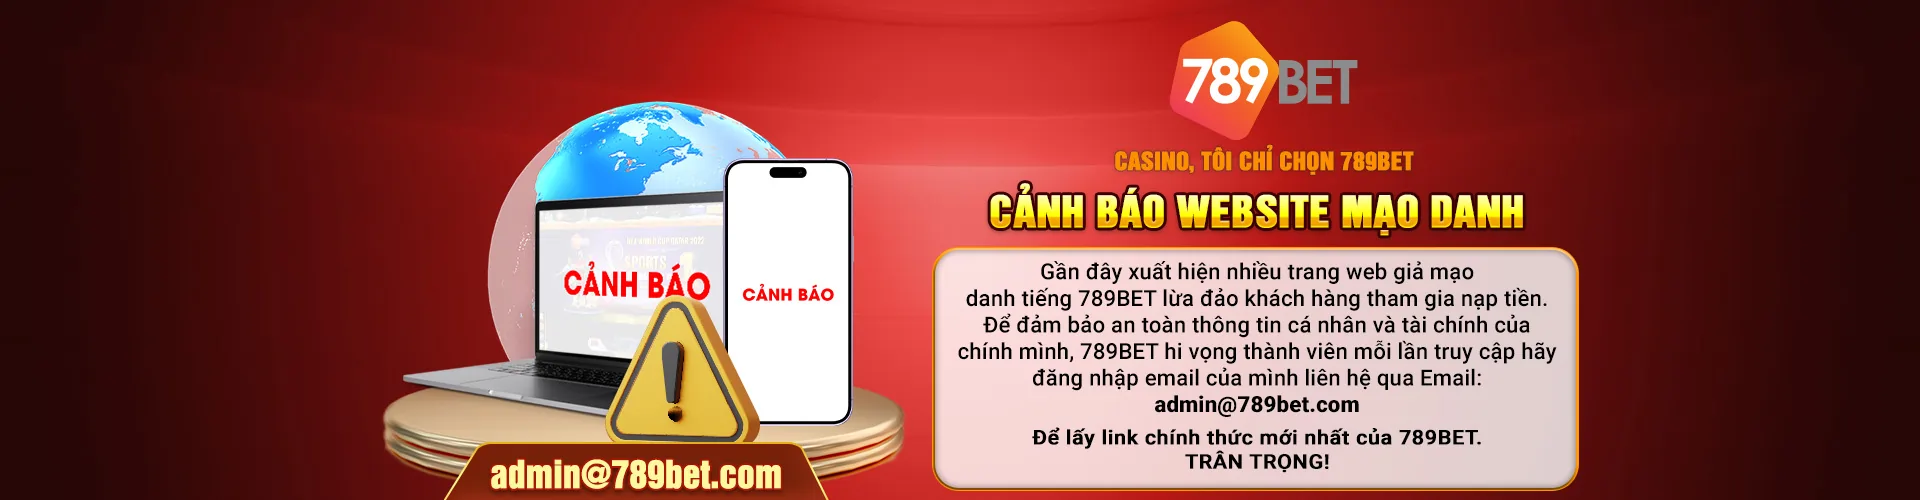 789bet canh bao lua dao 2